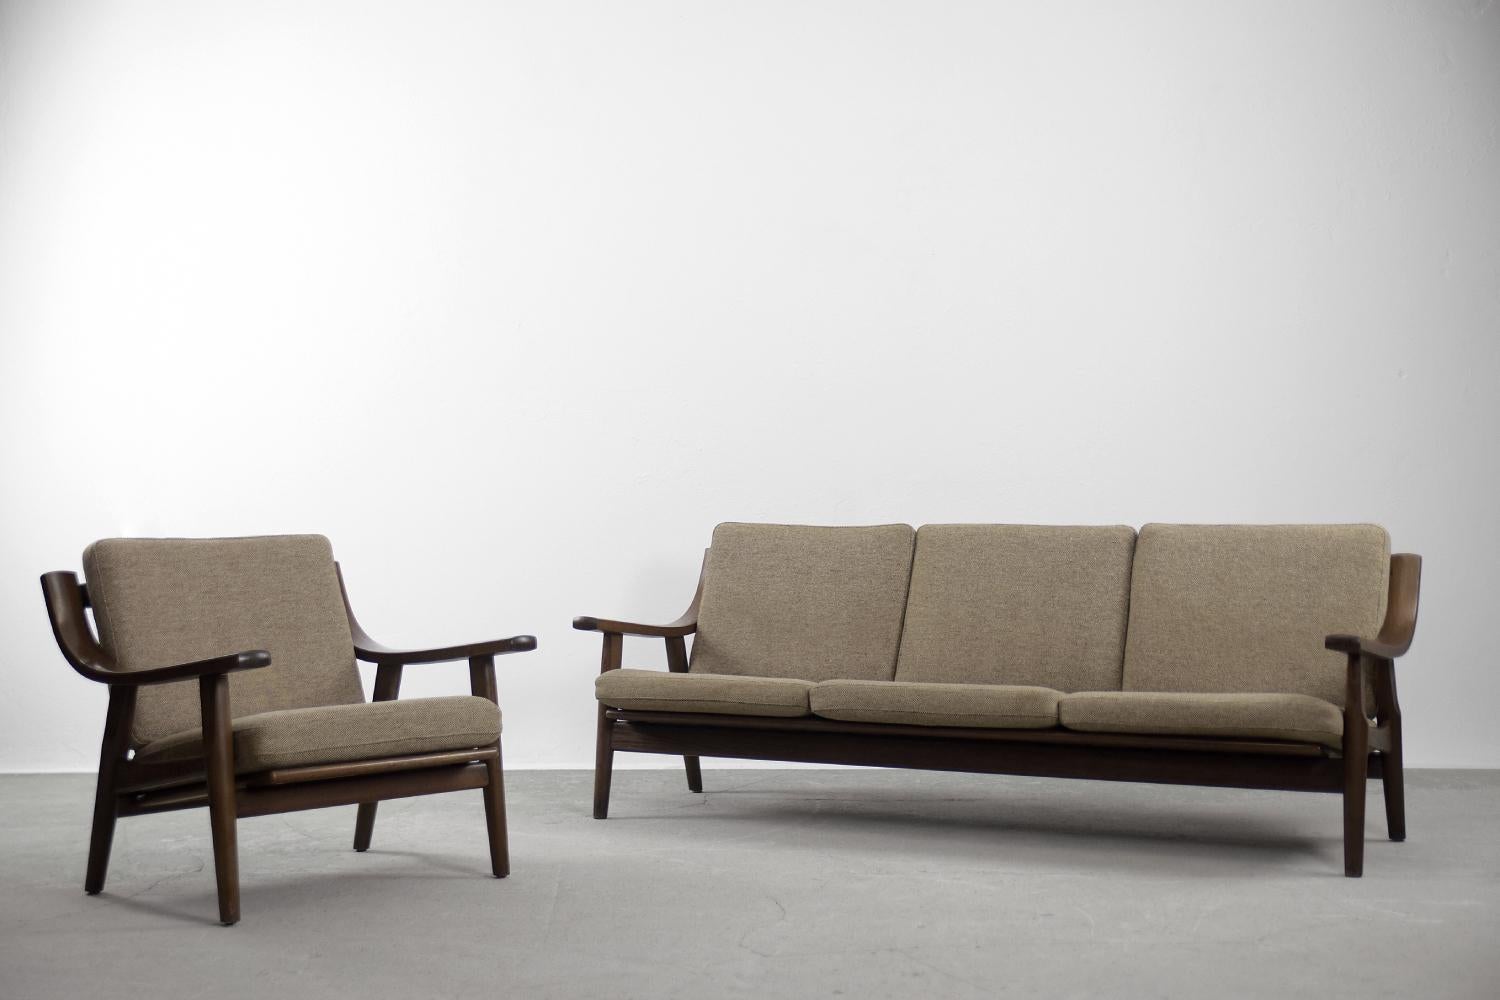 Cet élégant ensemble de salon se compose d'un canapé trois places et d'un fauteuil. L'ensemble a été conçu par Hans J. Wegner pour le Getama Gedsted au Danemark dans les années 1960. C'est le modèle GE-530. Le cadre est fabriqué en bois de chêne